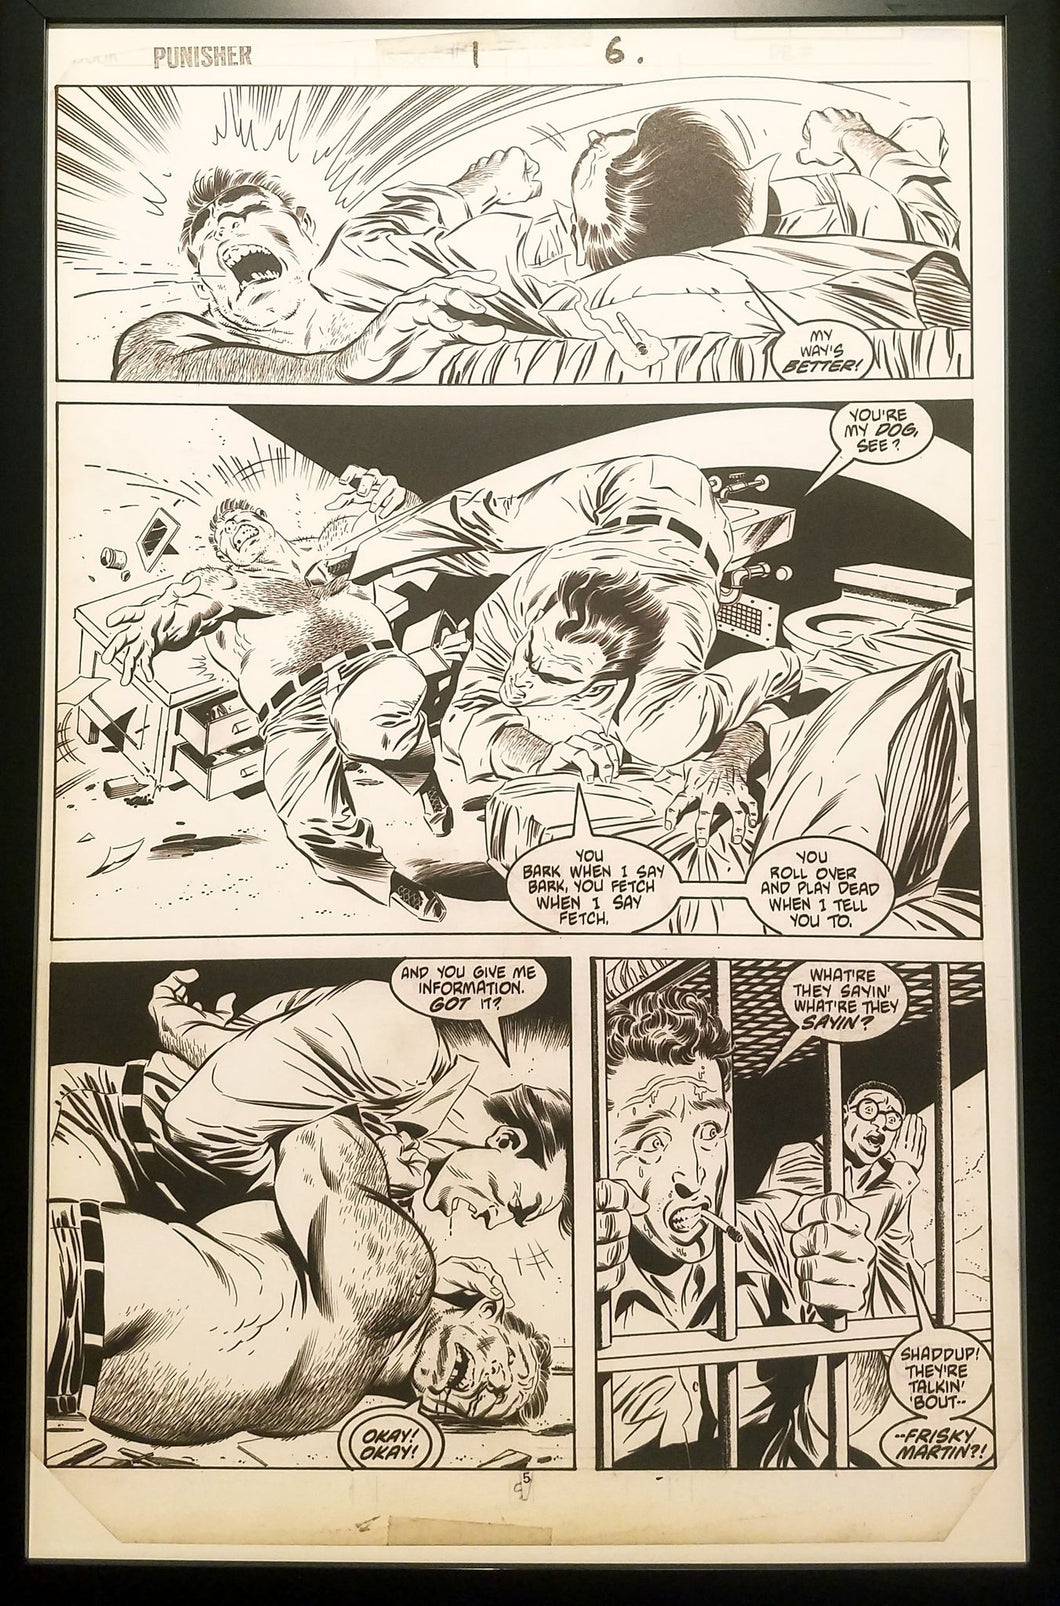 Punisher #1 pg. 6 by Mike Zeck 11x17 FRAMED Original Art Marvel Comics Poster